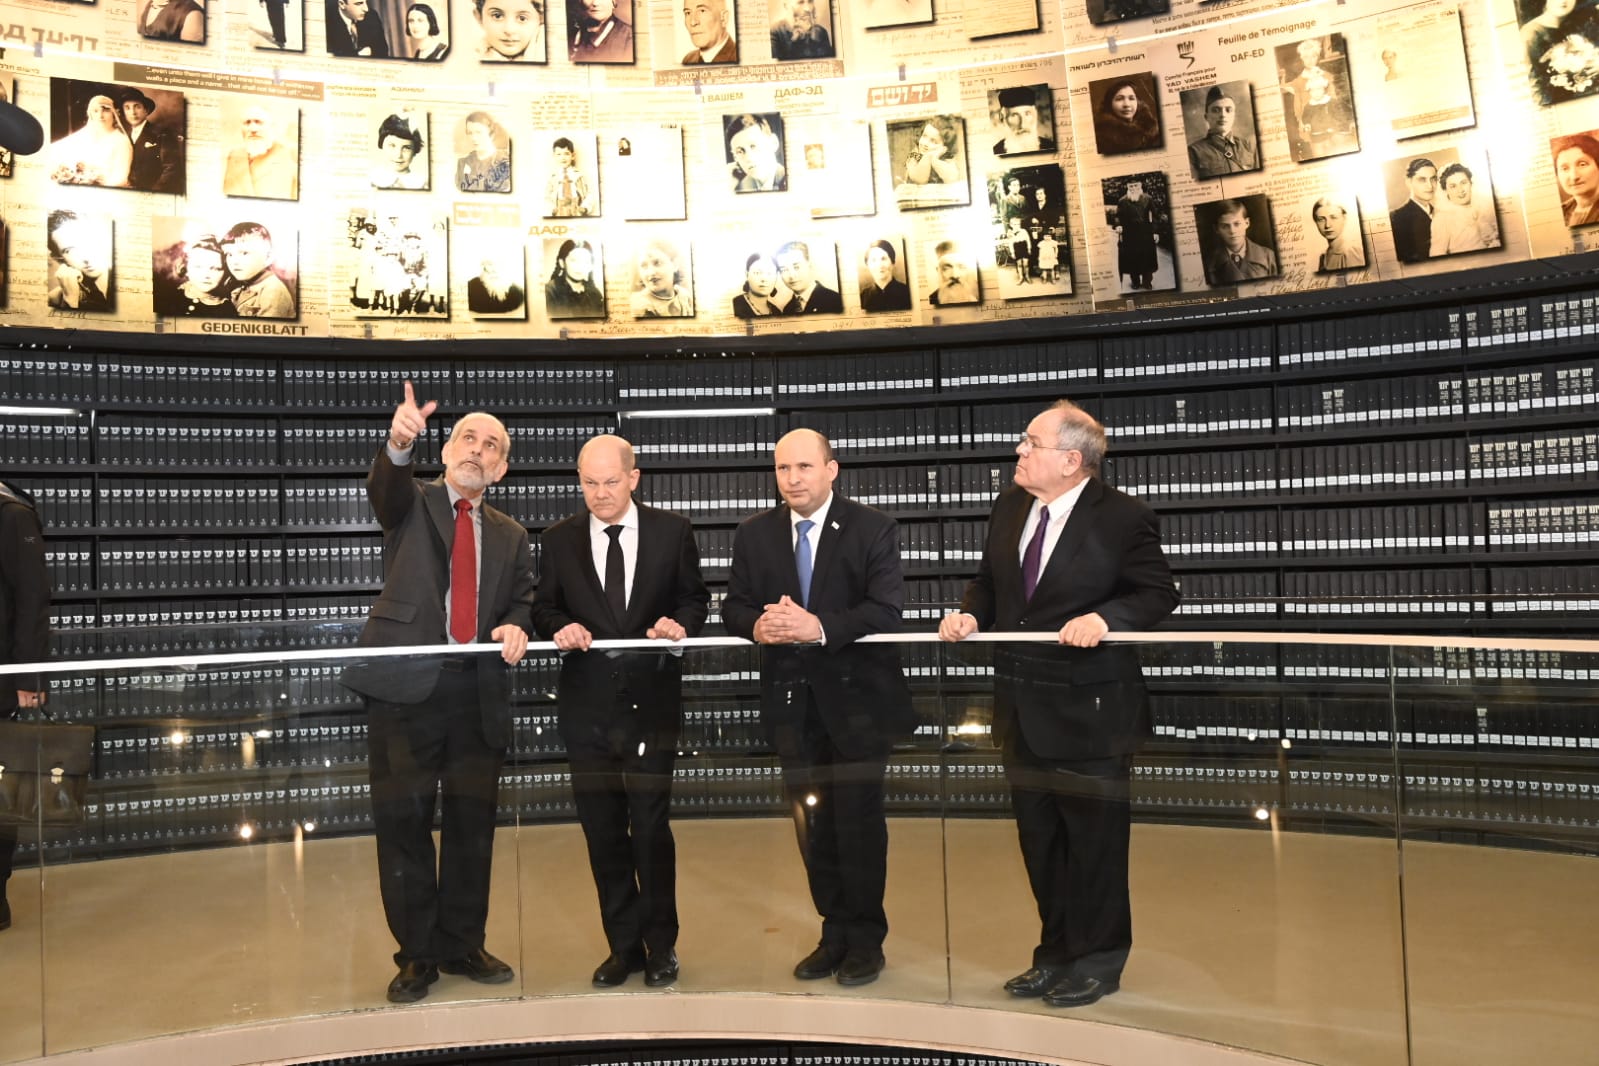 Bundeskanzler Olaf Scholz, Premierminister Naftali Bennett und Vorsitzender von Yad Vashem Dani Dayan in der Halle der Namen am Ende des Museums zur Geschichte des Holocaust